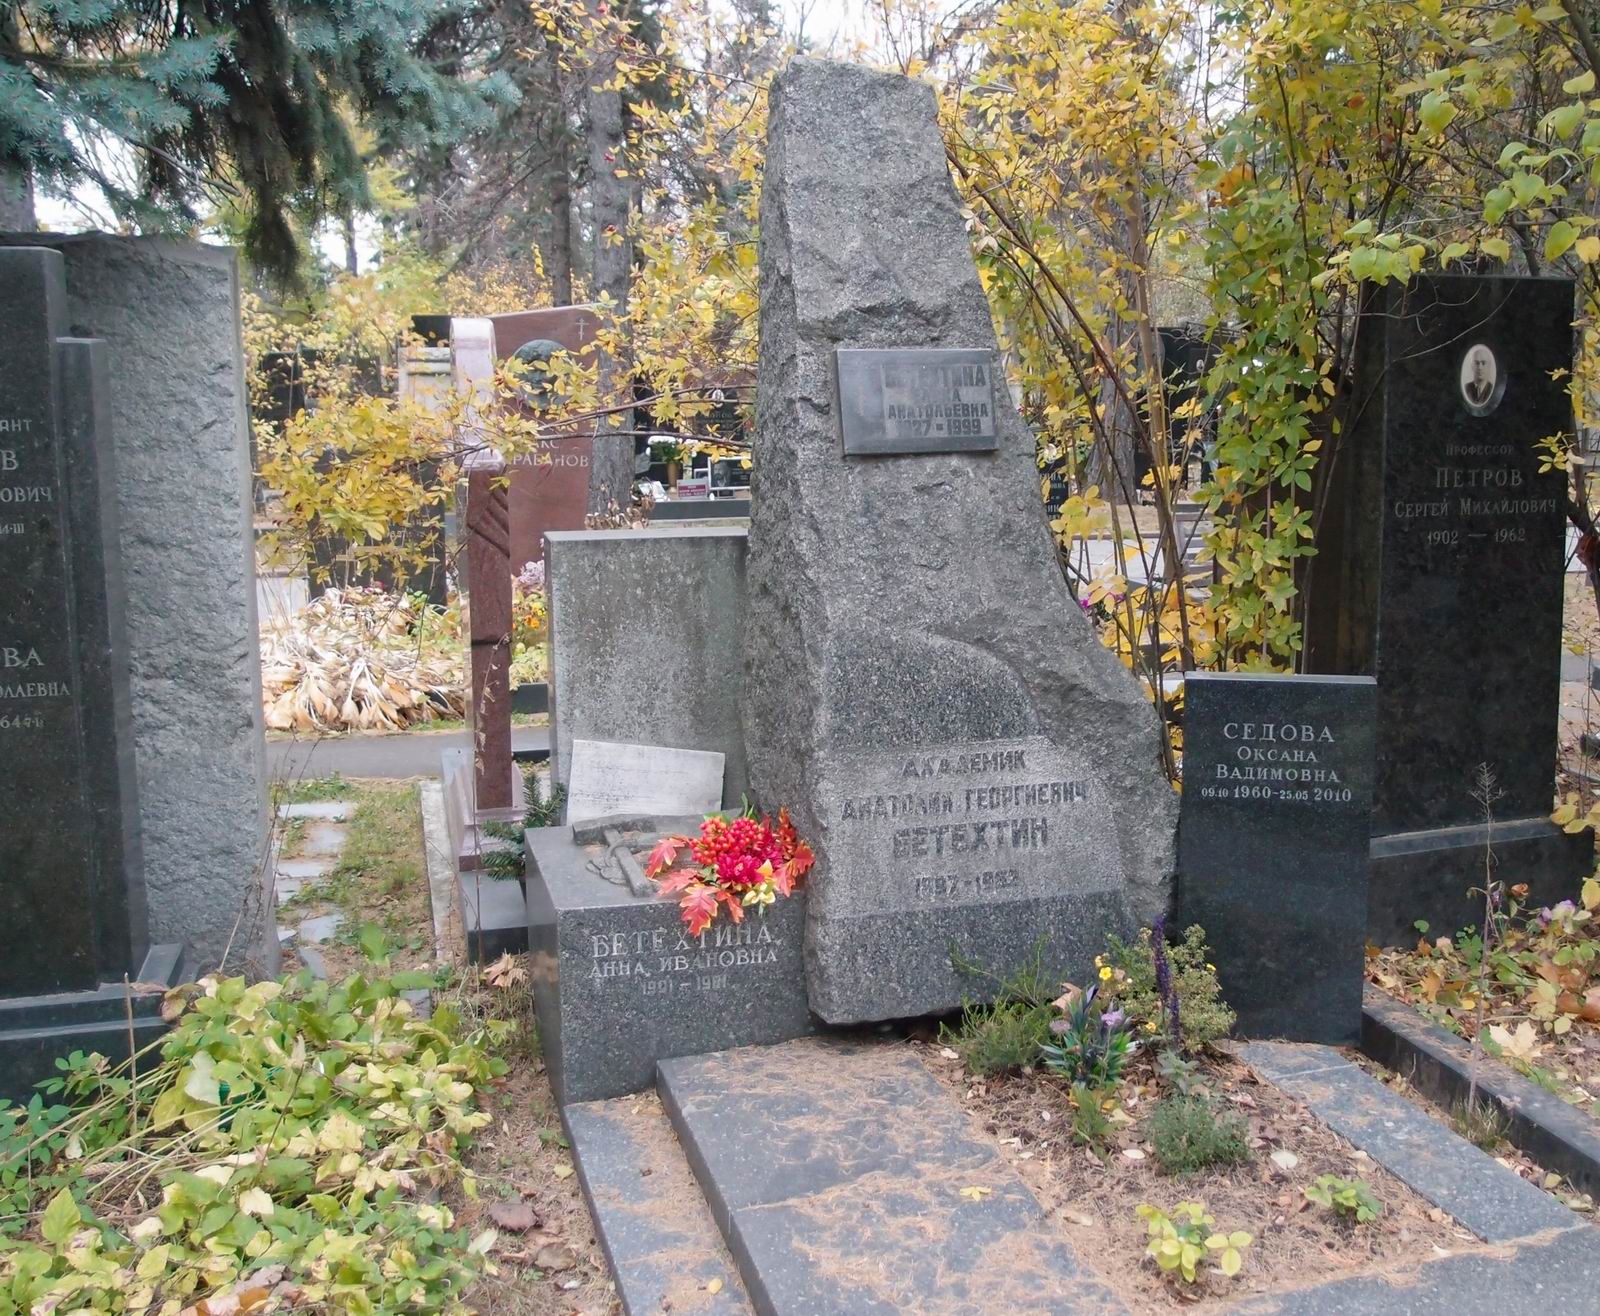 Памятник на могиле Бетехтина А.Г. (1897-1962), на Новодевичьем кладбище (8-16-10).